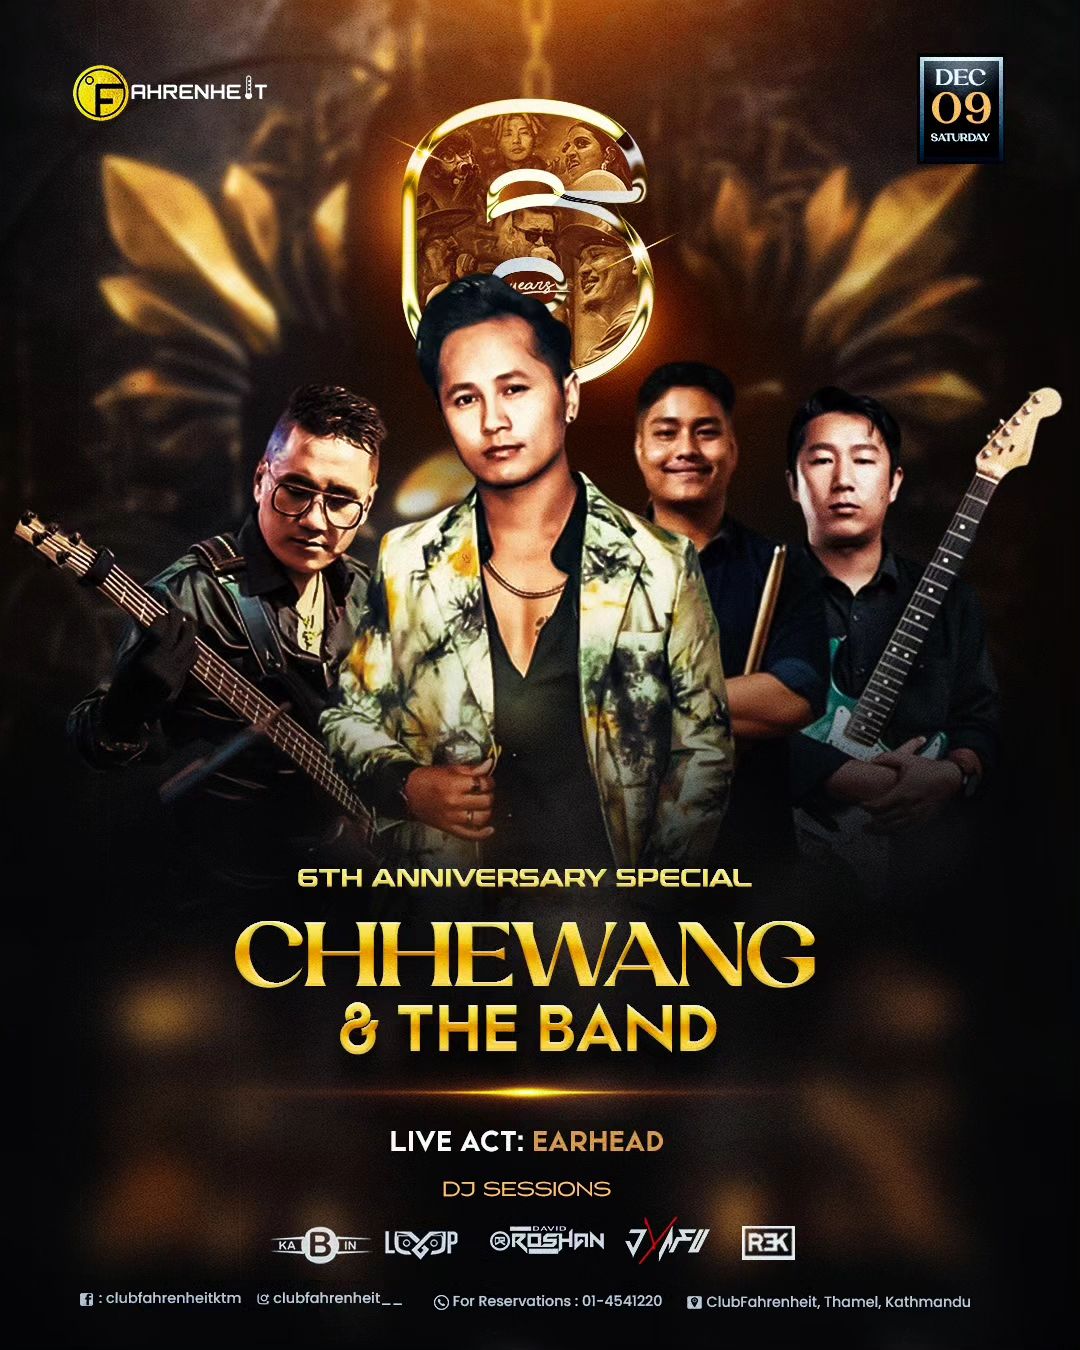 Chhewang&The Band live at Club Fahrenheit on their 6th Anniversary